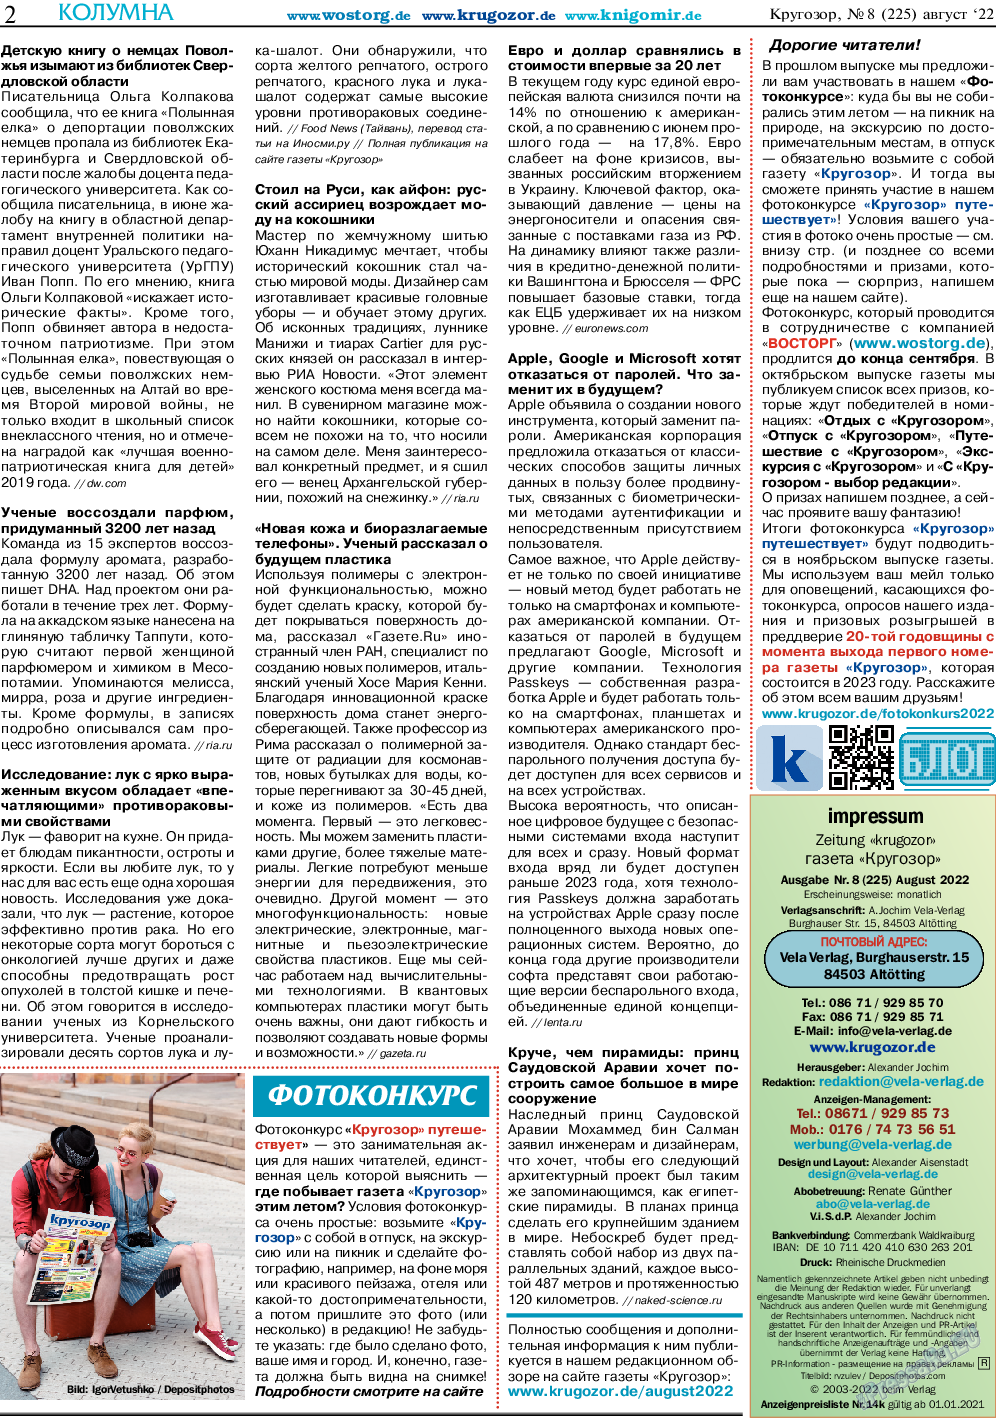 Кругозор, газета. 2022 №8 стр.2